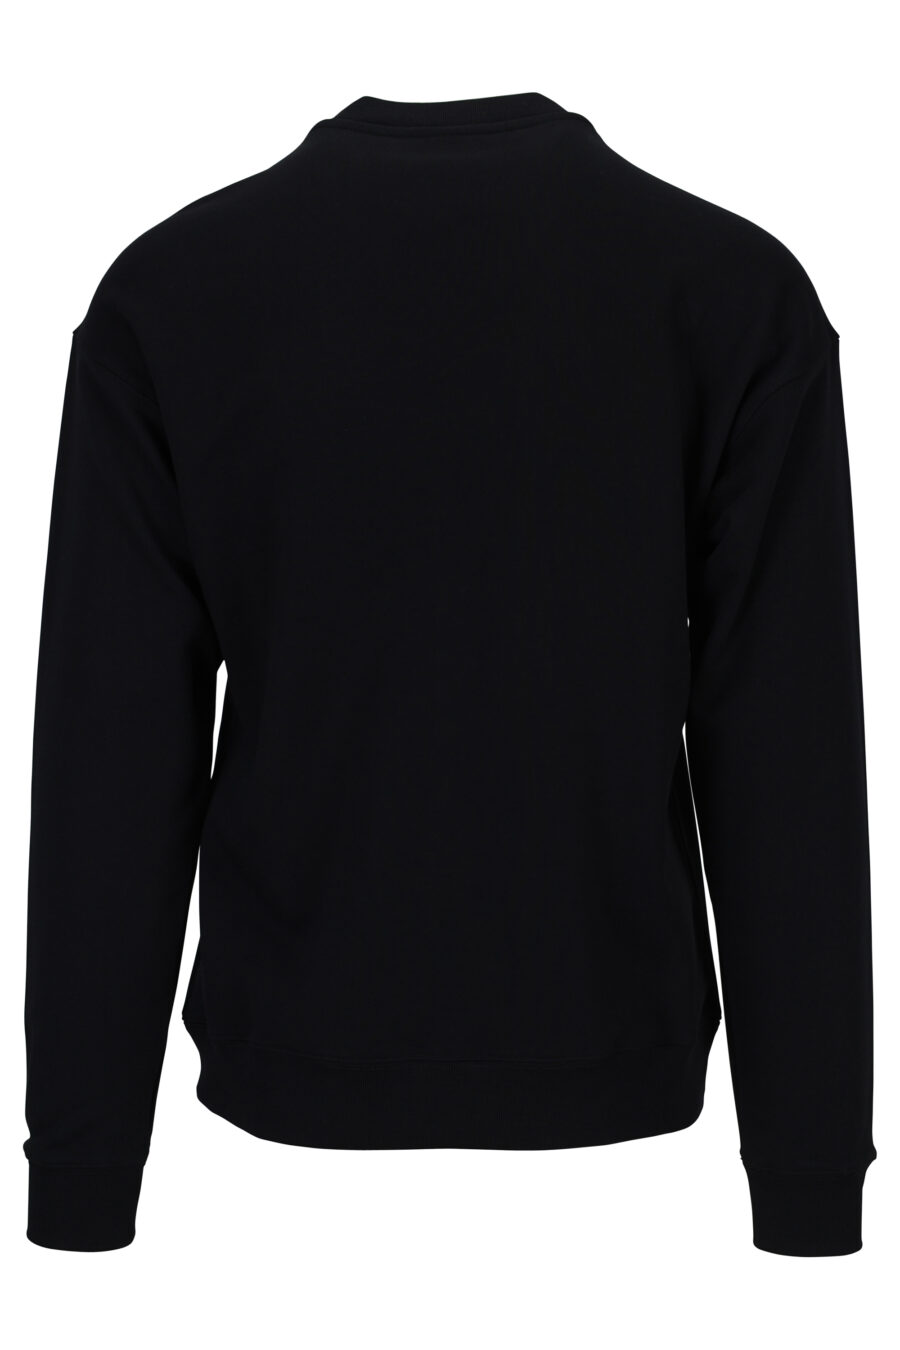 Schwarzes Sweatshirt aus Bio-Baumwolle mit weißem Maxilogue - 889316662009 1